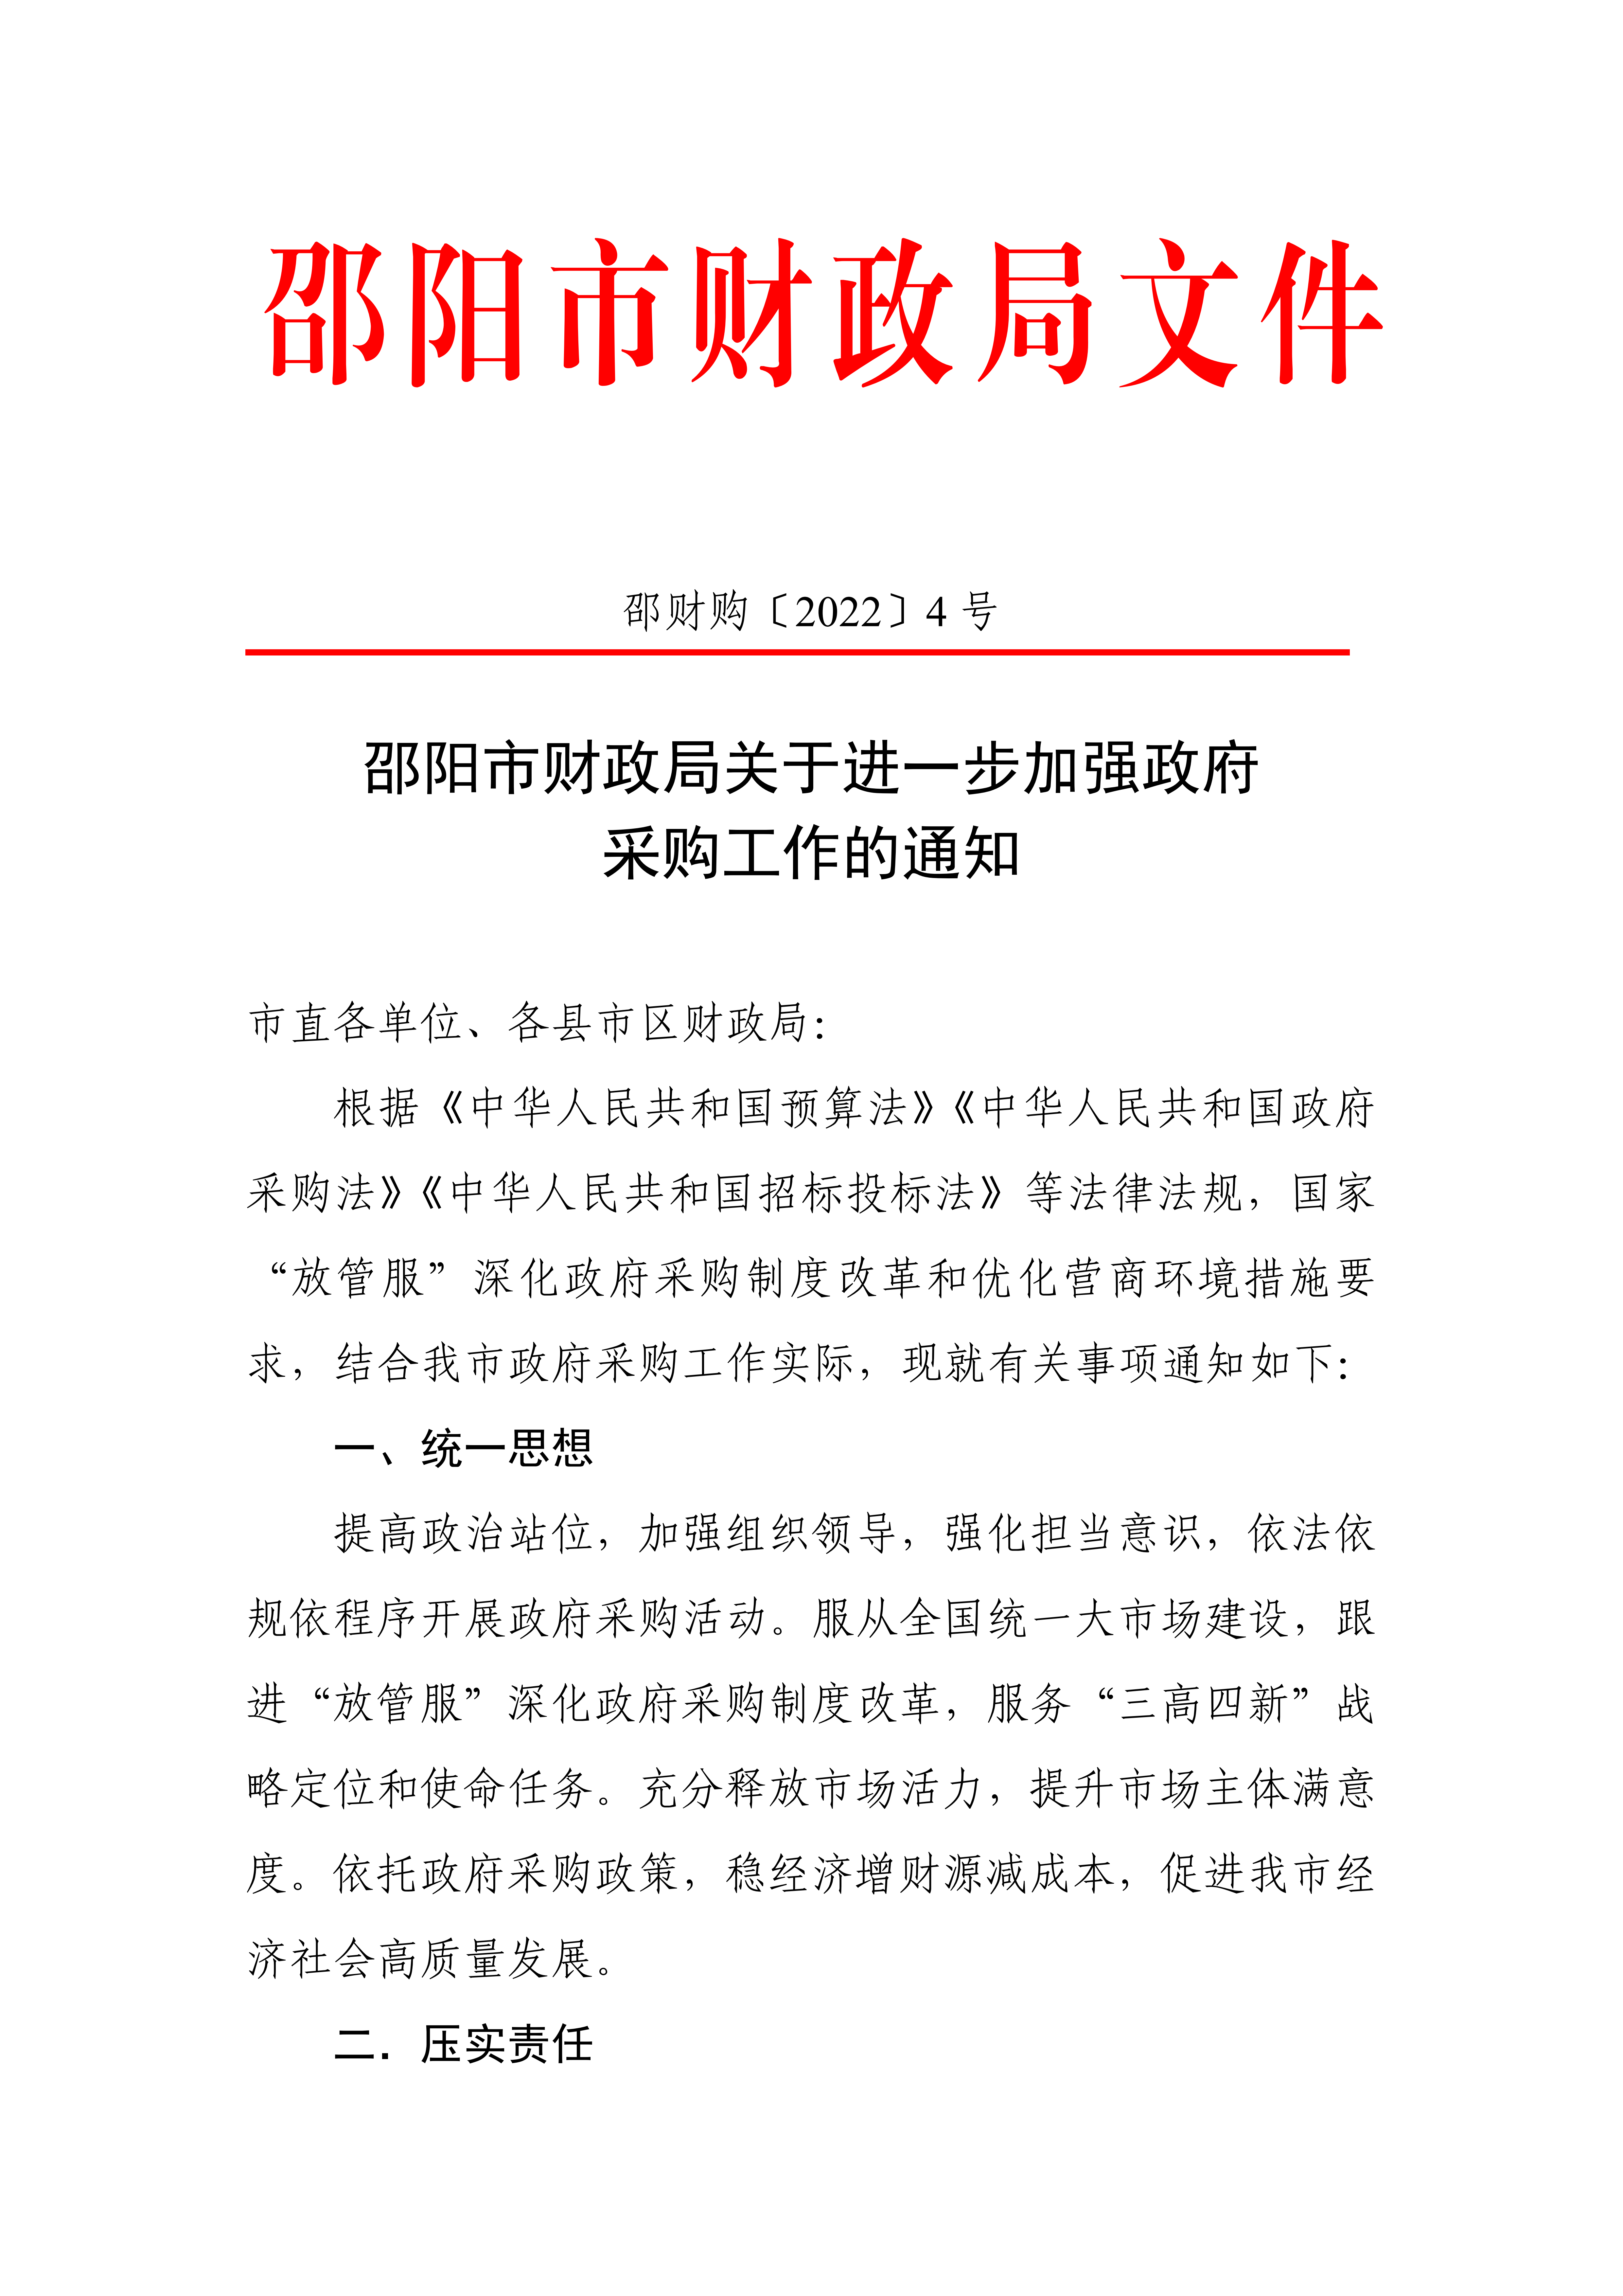 邵阳市关于进一步加强政府采购工作的通知_00.png